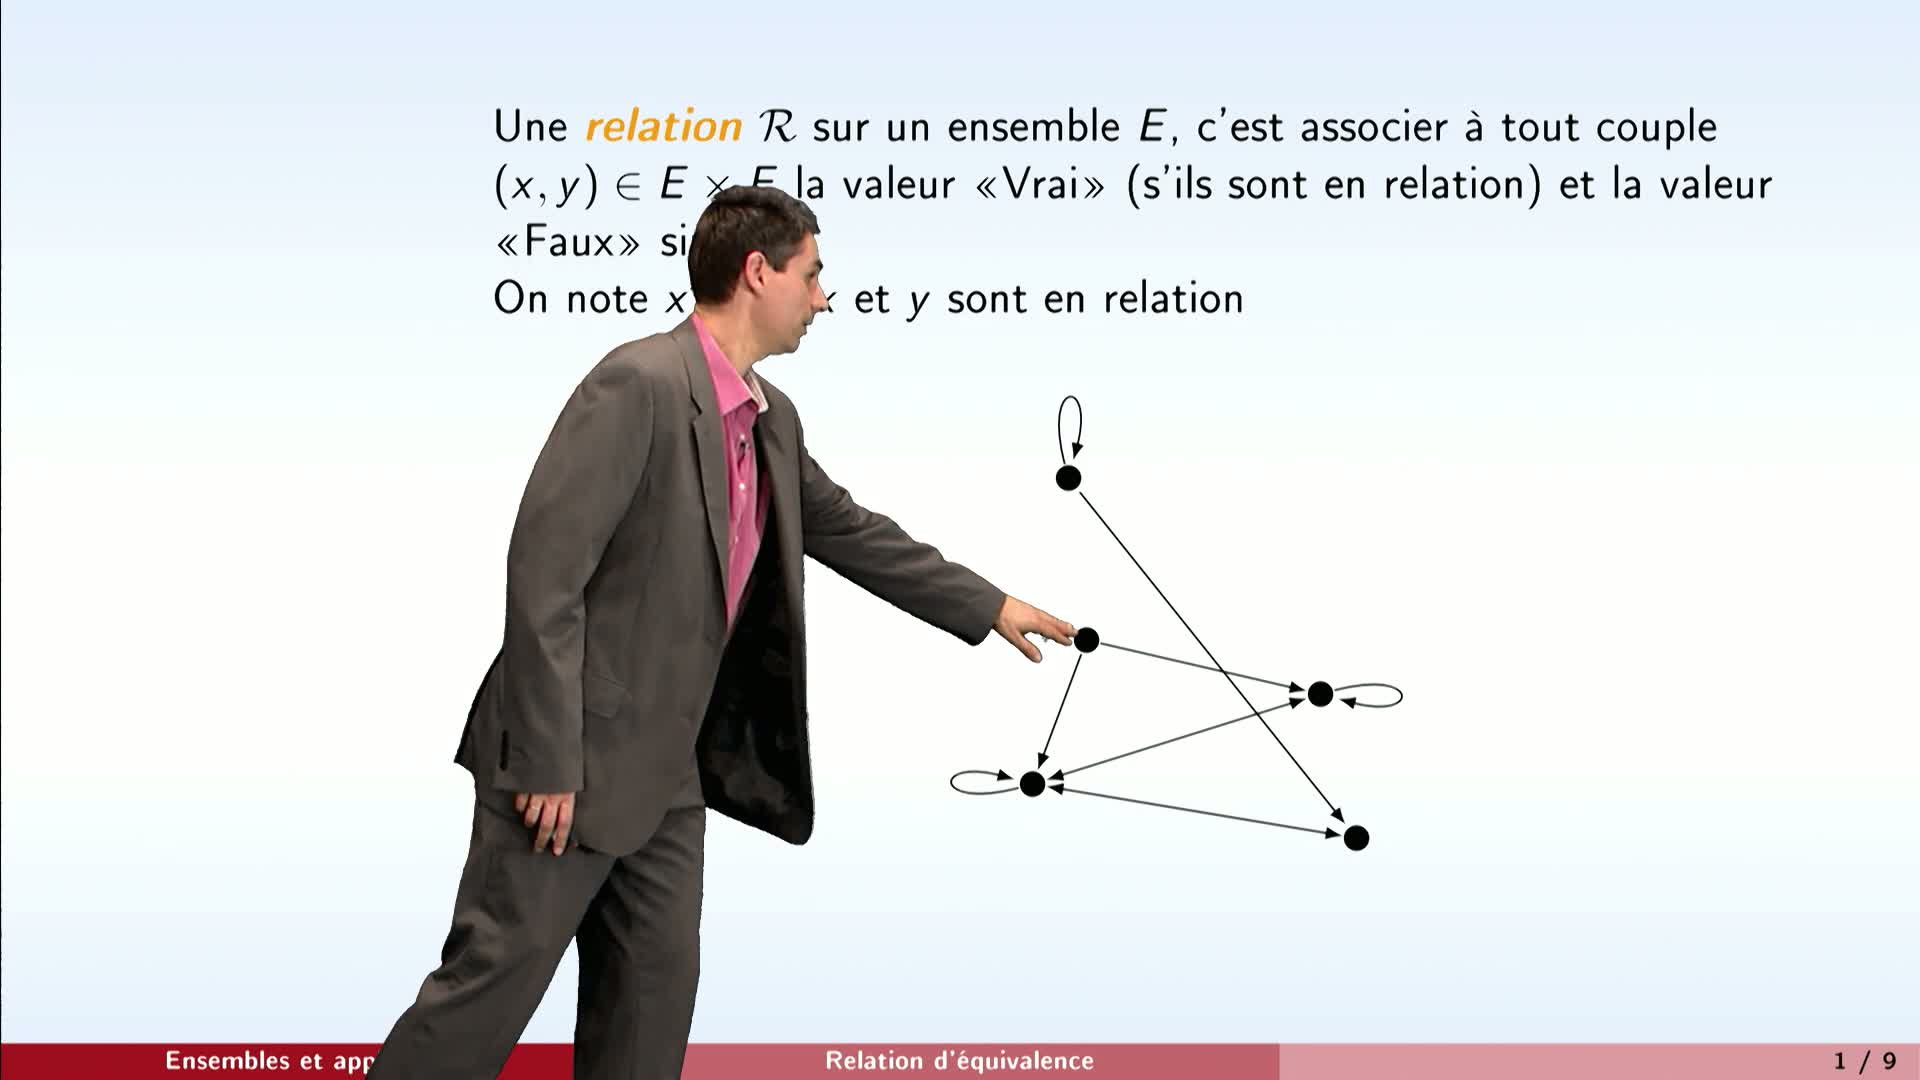 Chapitre "Ensembles et applications" - Partie 5 : Relation d'équivalence